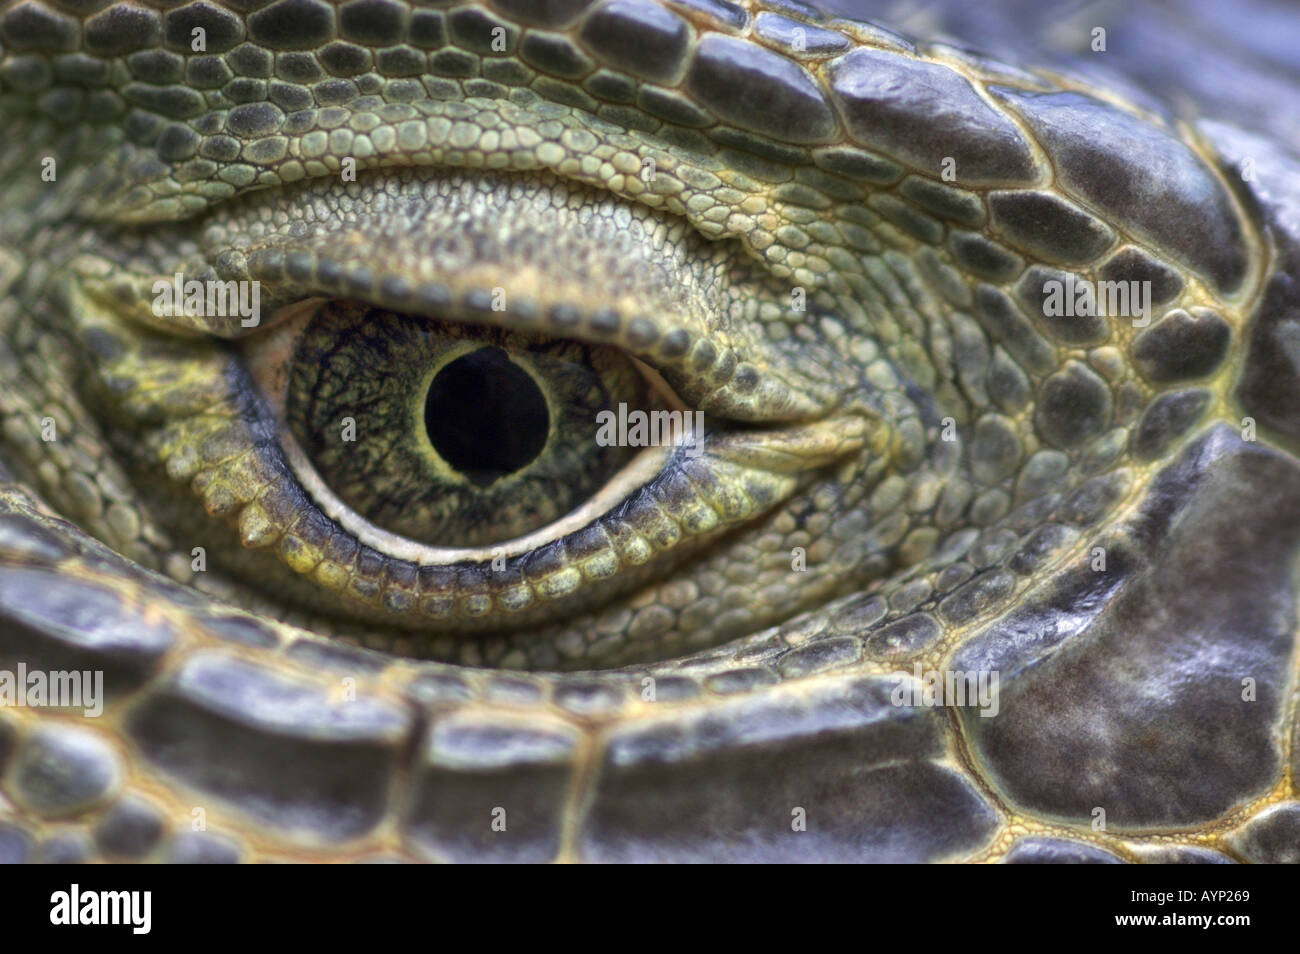 close up of iguana eye Stock Photo